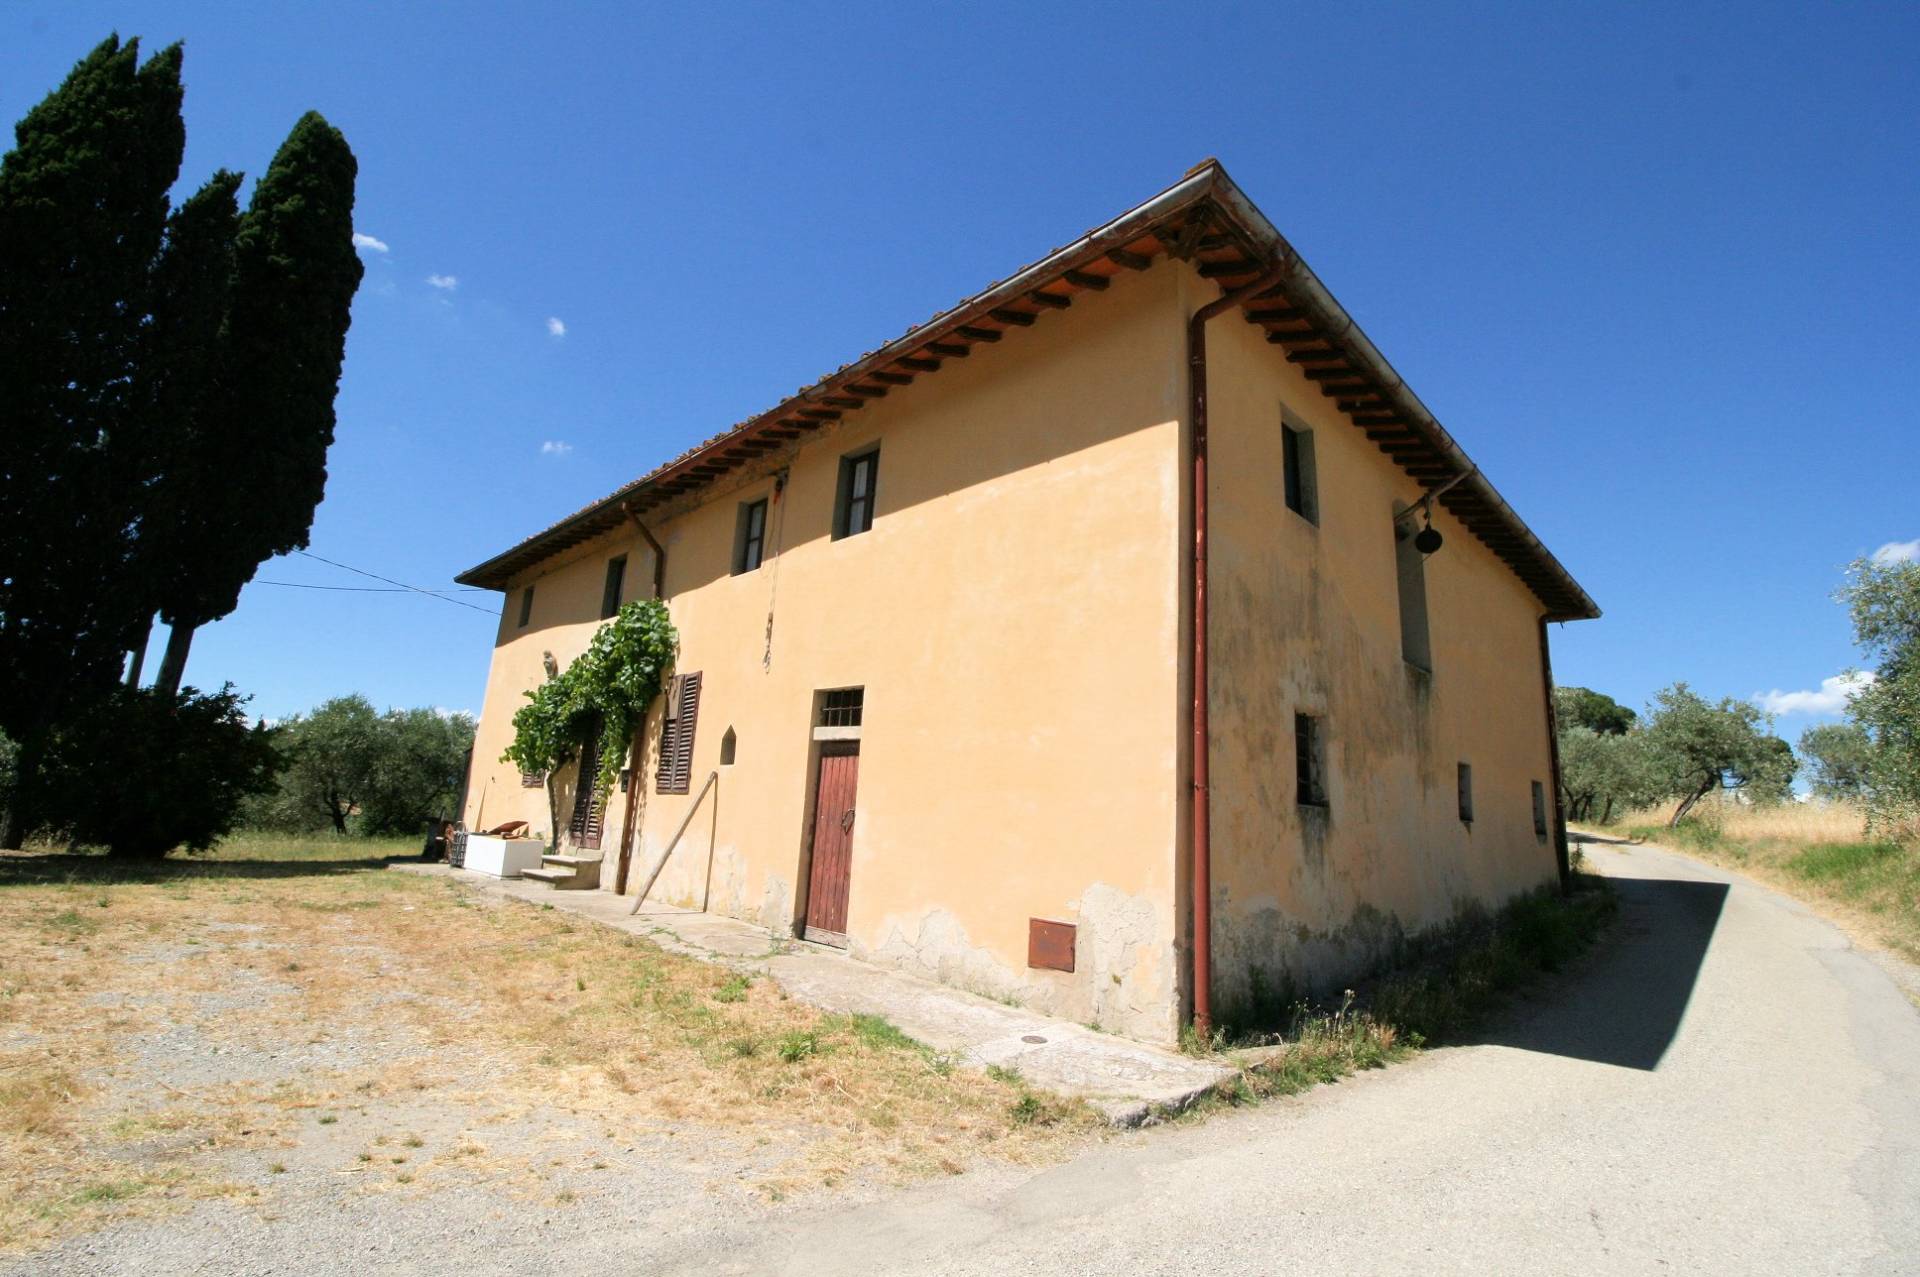 Rustico / Casale in vendita a Quarrata, 12 locali, prezzo € 350.000 | CambioCasa.it